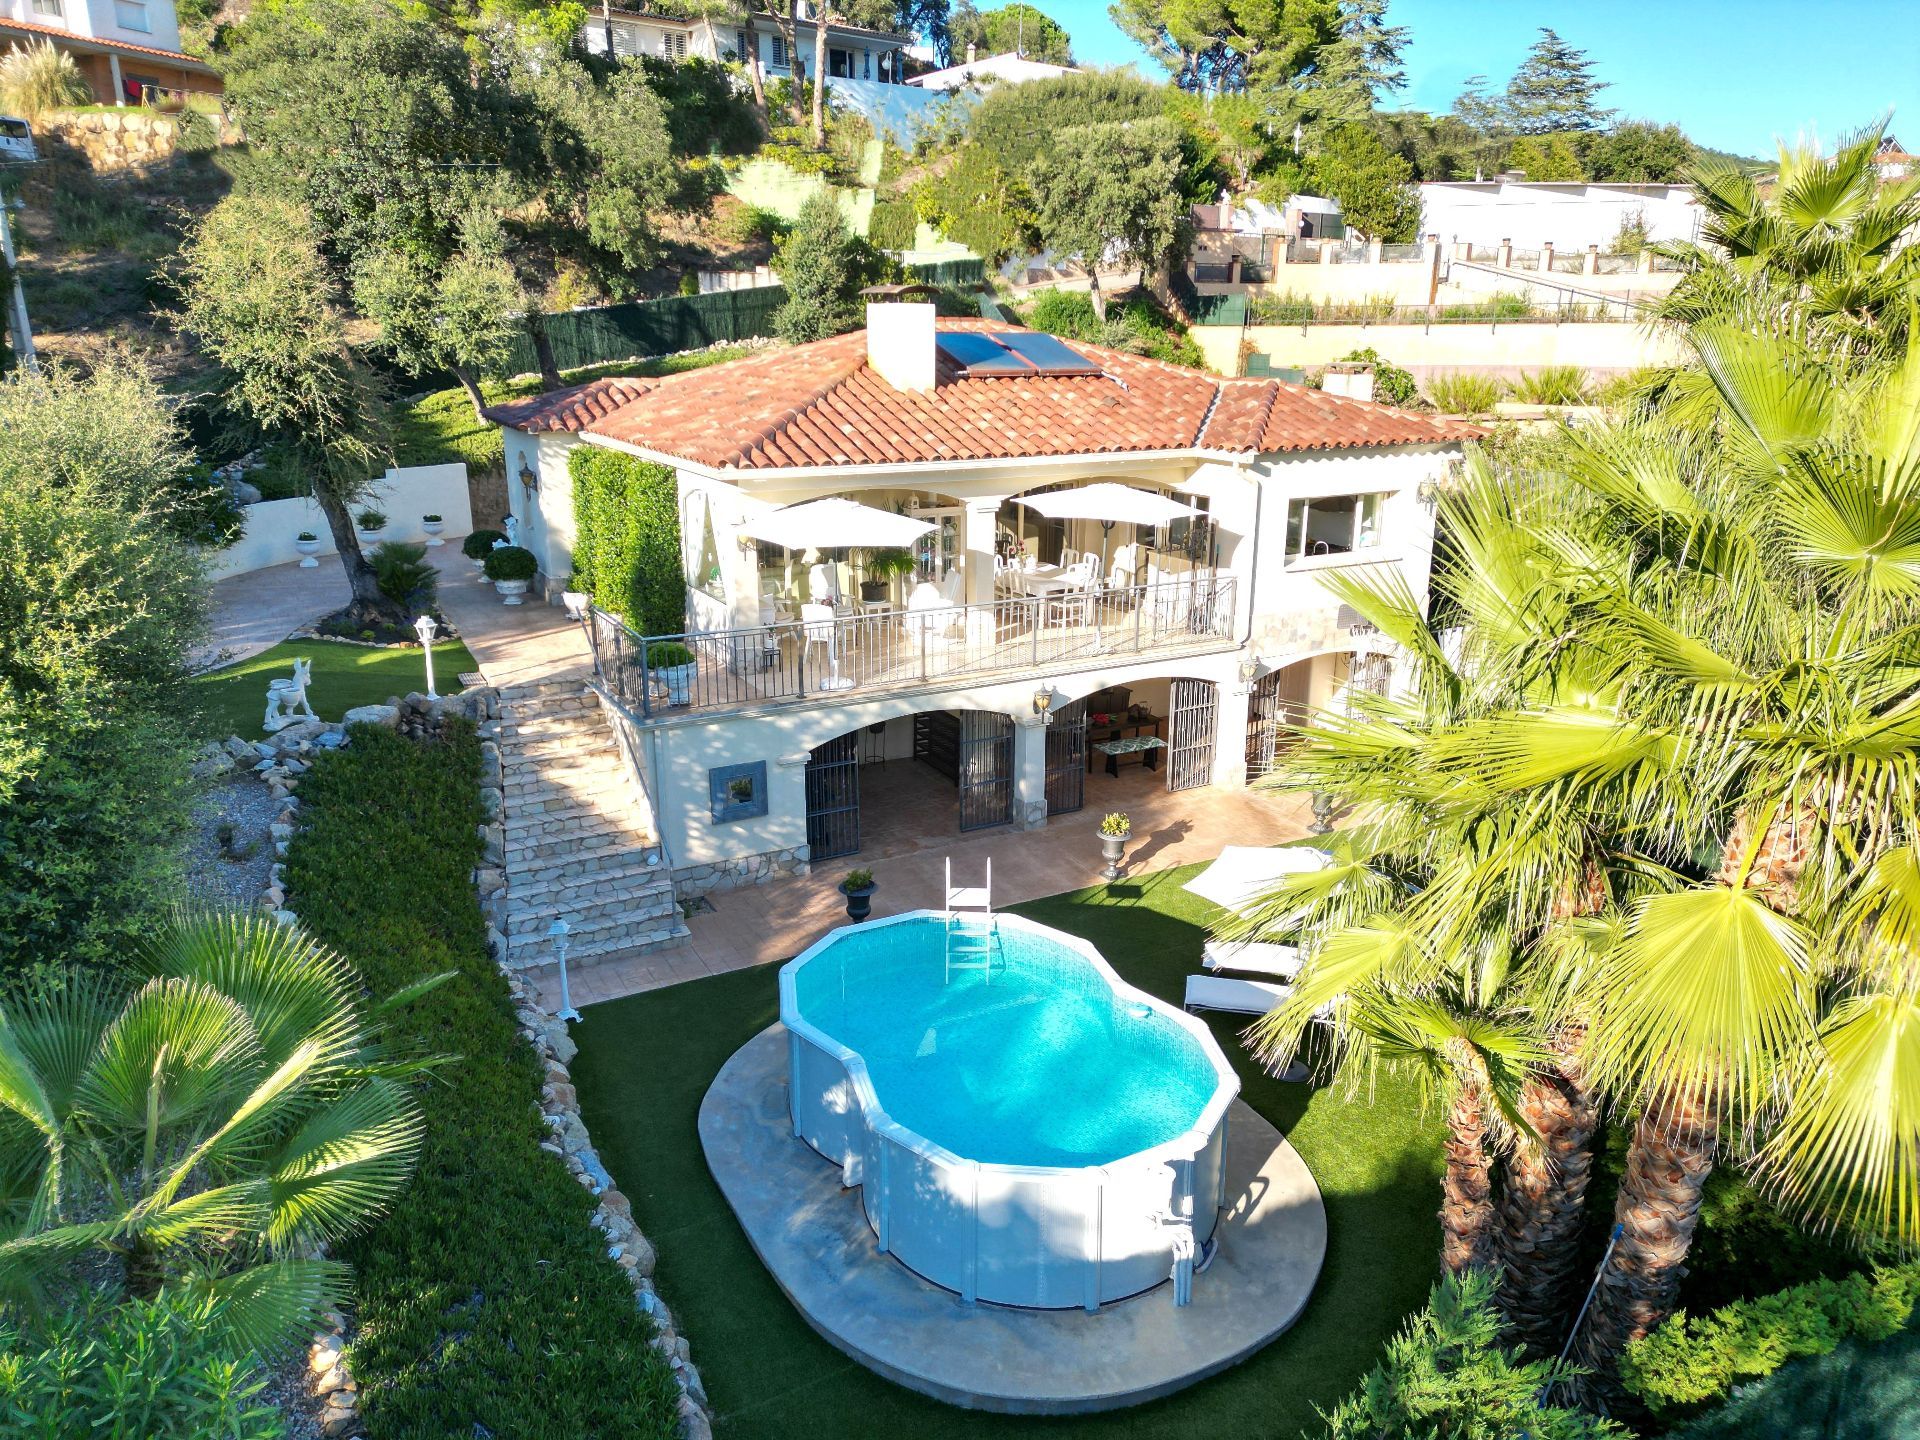 Luchtfoto, tuin en zwembad van resale villa in Santa Cristina d'Aro in Spanje, gelegen aan de  Costa Brava